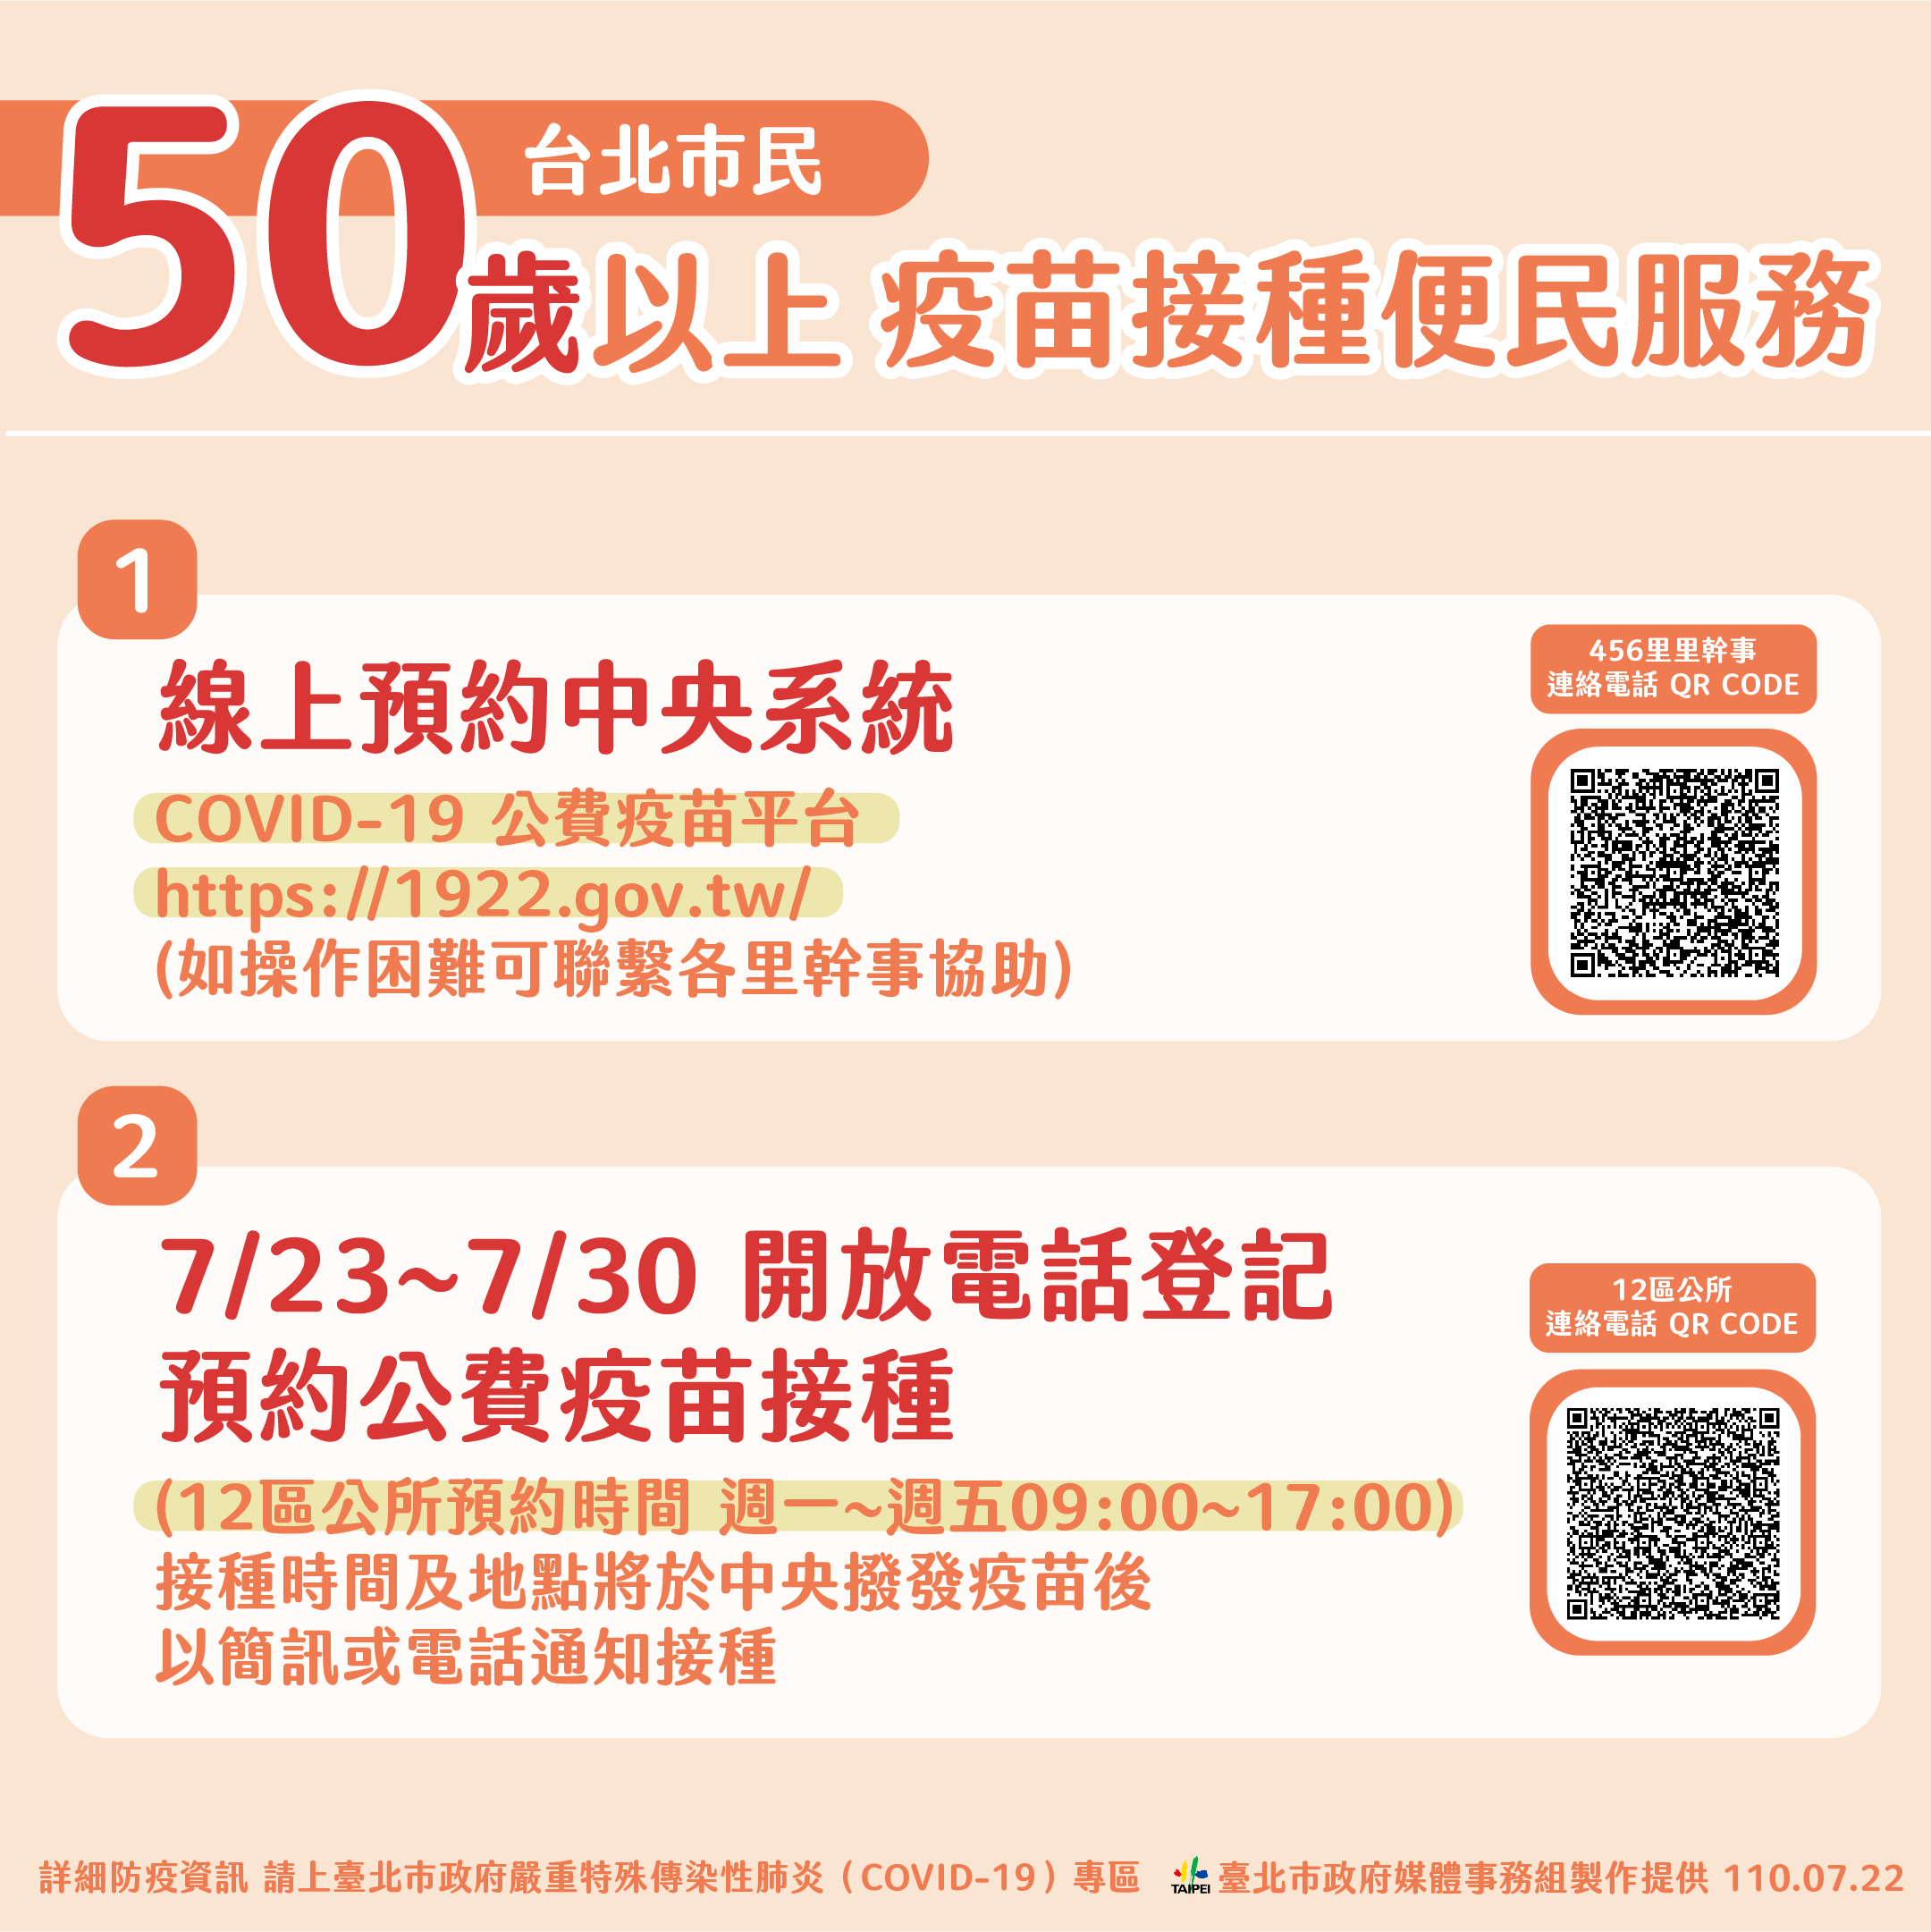 Thành phố Đài Bắc cho phép người dân trên 50 tuổi đăng ký tiêm vắc-xin bằng cách gọi điện thoại. (Nguồn ảnh: chính quyền thành phố Đài Bắc) 